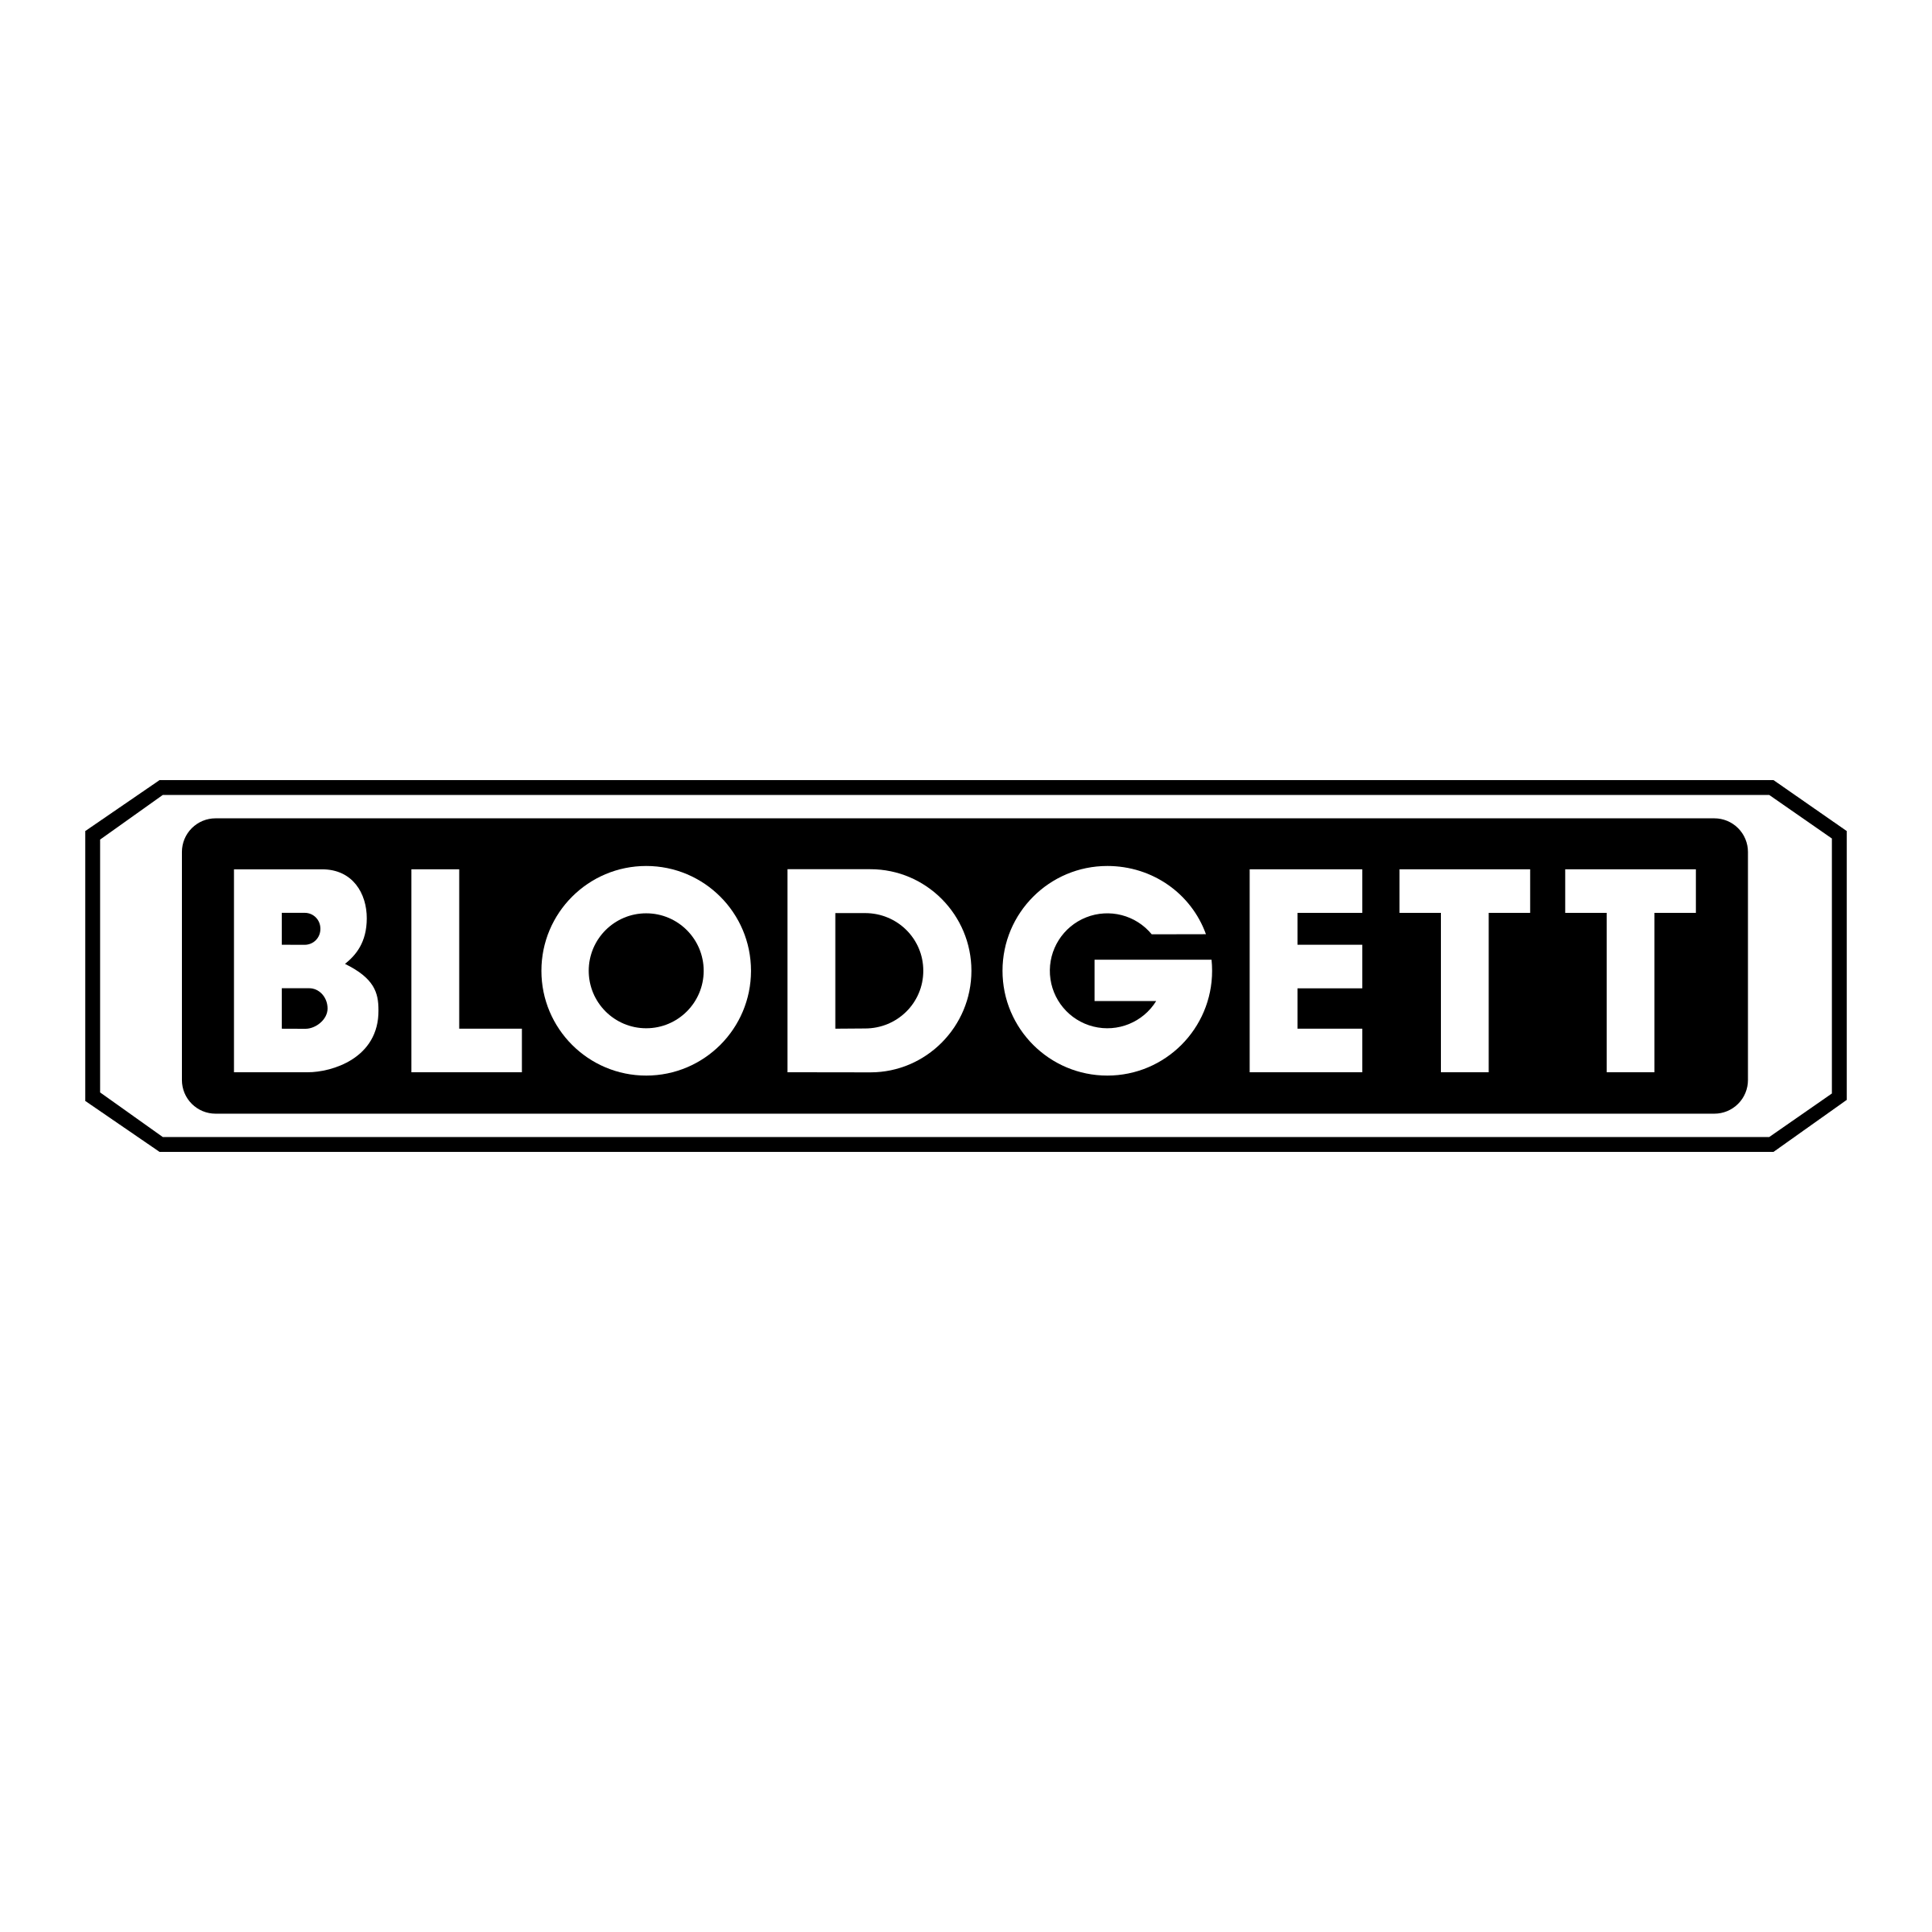 Blodgett Logo - Blodgett 01 Logo PNG Transparent & SVG Vector